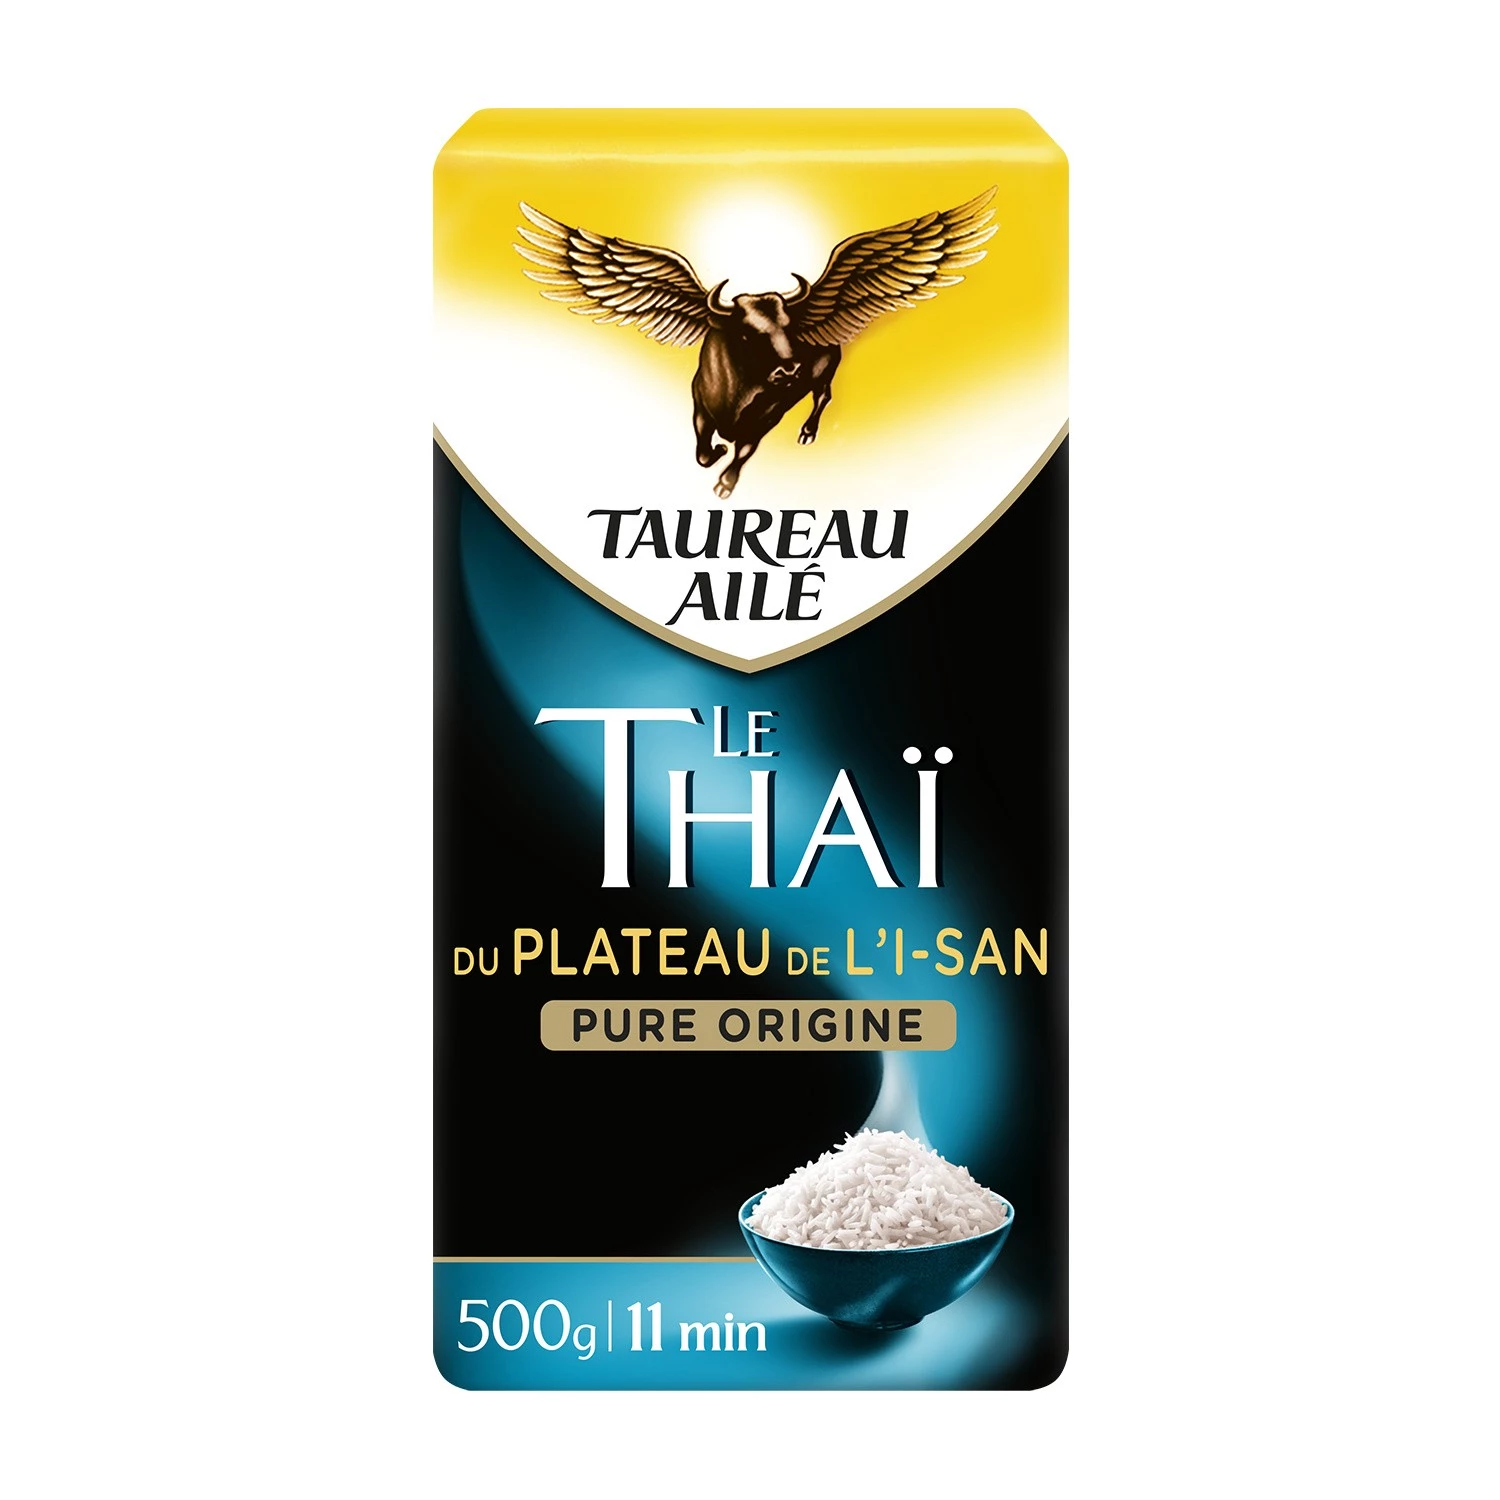 Riso tailandese dell'altopiano dell'Isan, 500 g - TAUREAU AILÉ